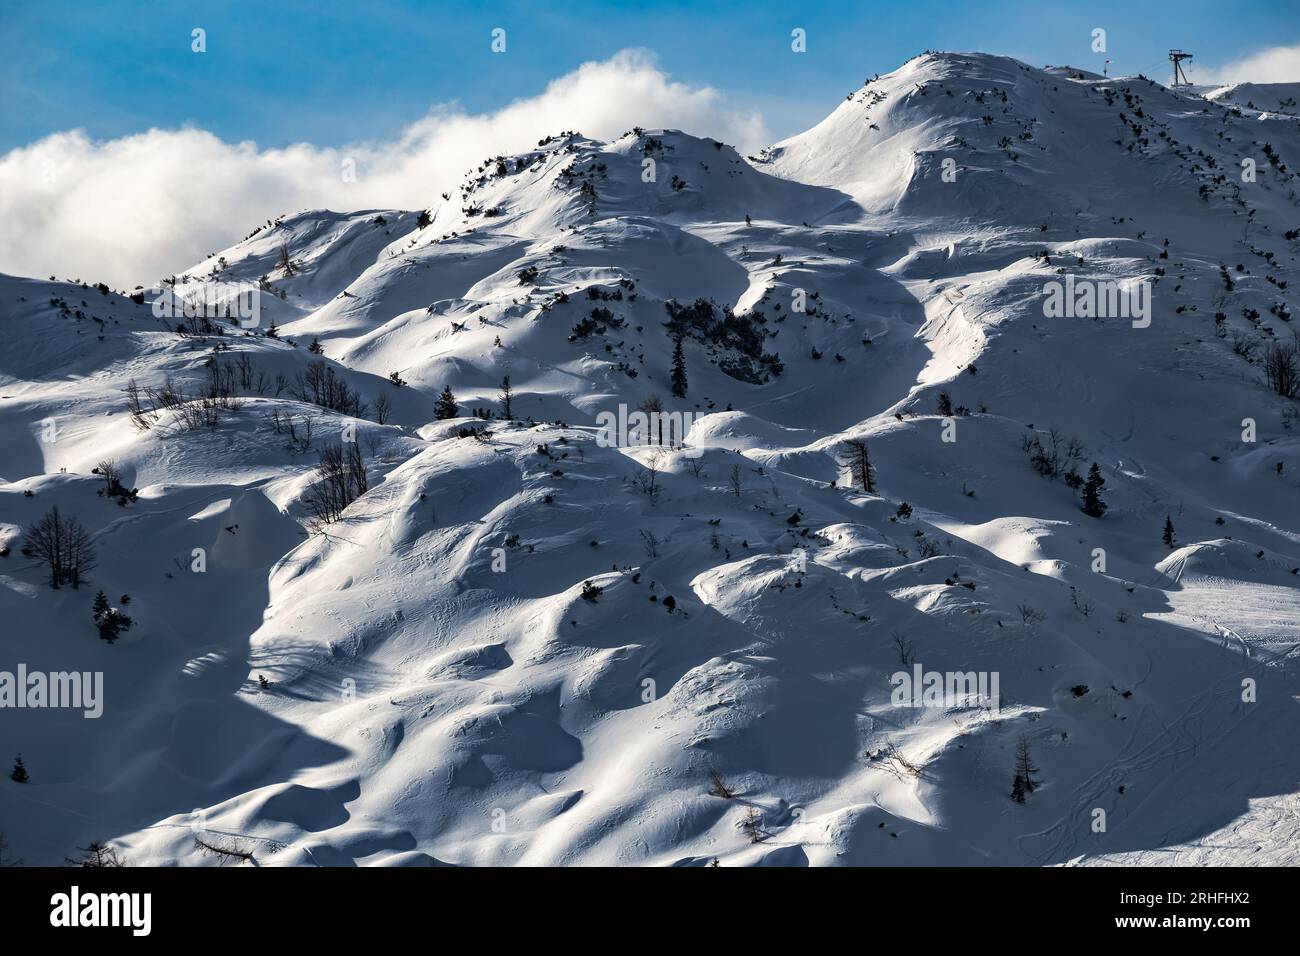 Bohinj, Slovénie - vue hivernale de la belle montagne enneigée Vogel dans les Alpes au parc national du Triglav sur une journée d'hiver ensoleillée avec un ciel bleu Banque D'Images